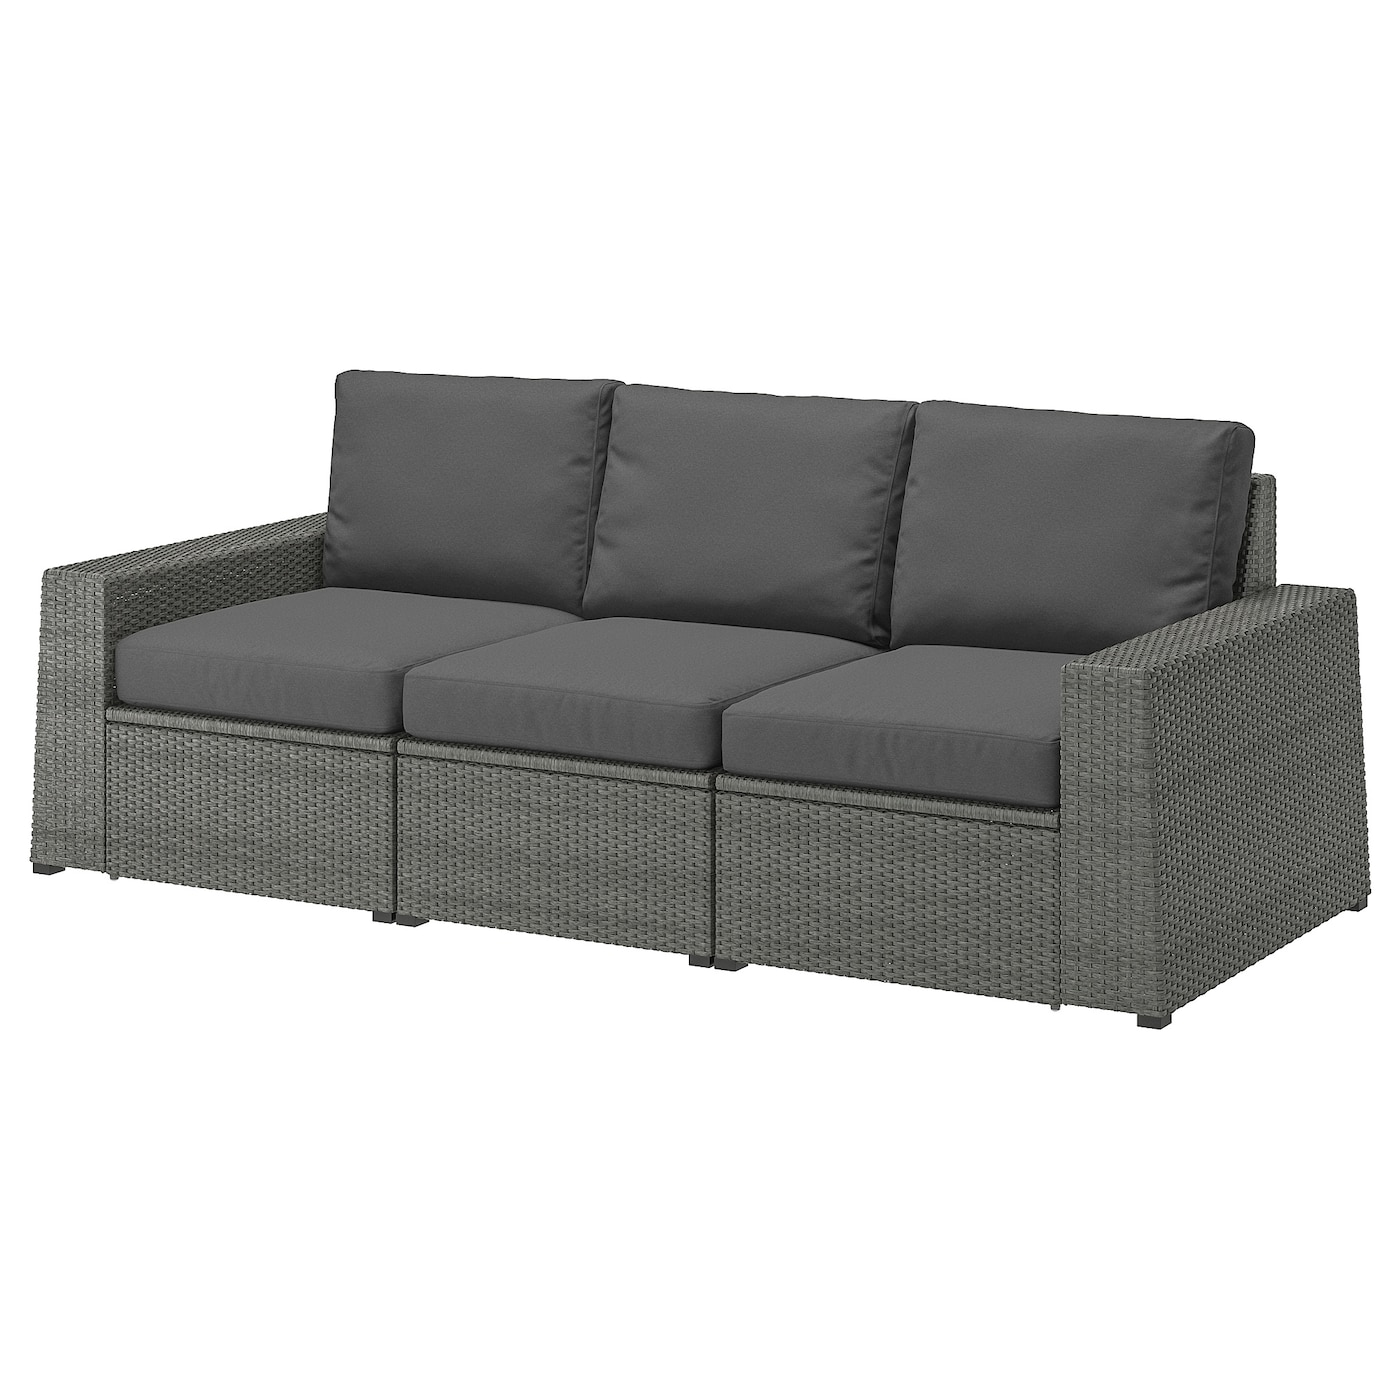 3-местный модульный диван - IKEA SOLLERÖN/SOLLERON/СОЛЛЕРОН ИКЕА, 88х82х223 см, темно-серый